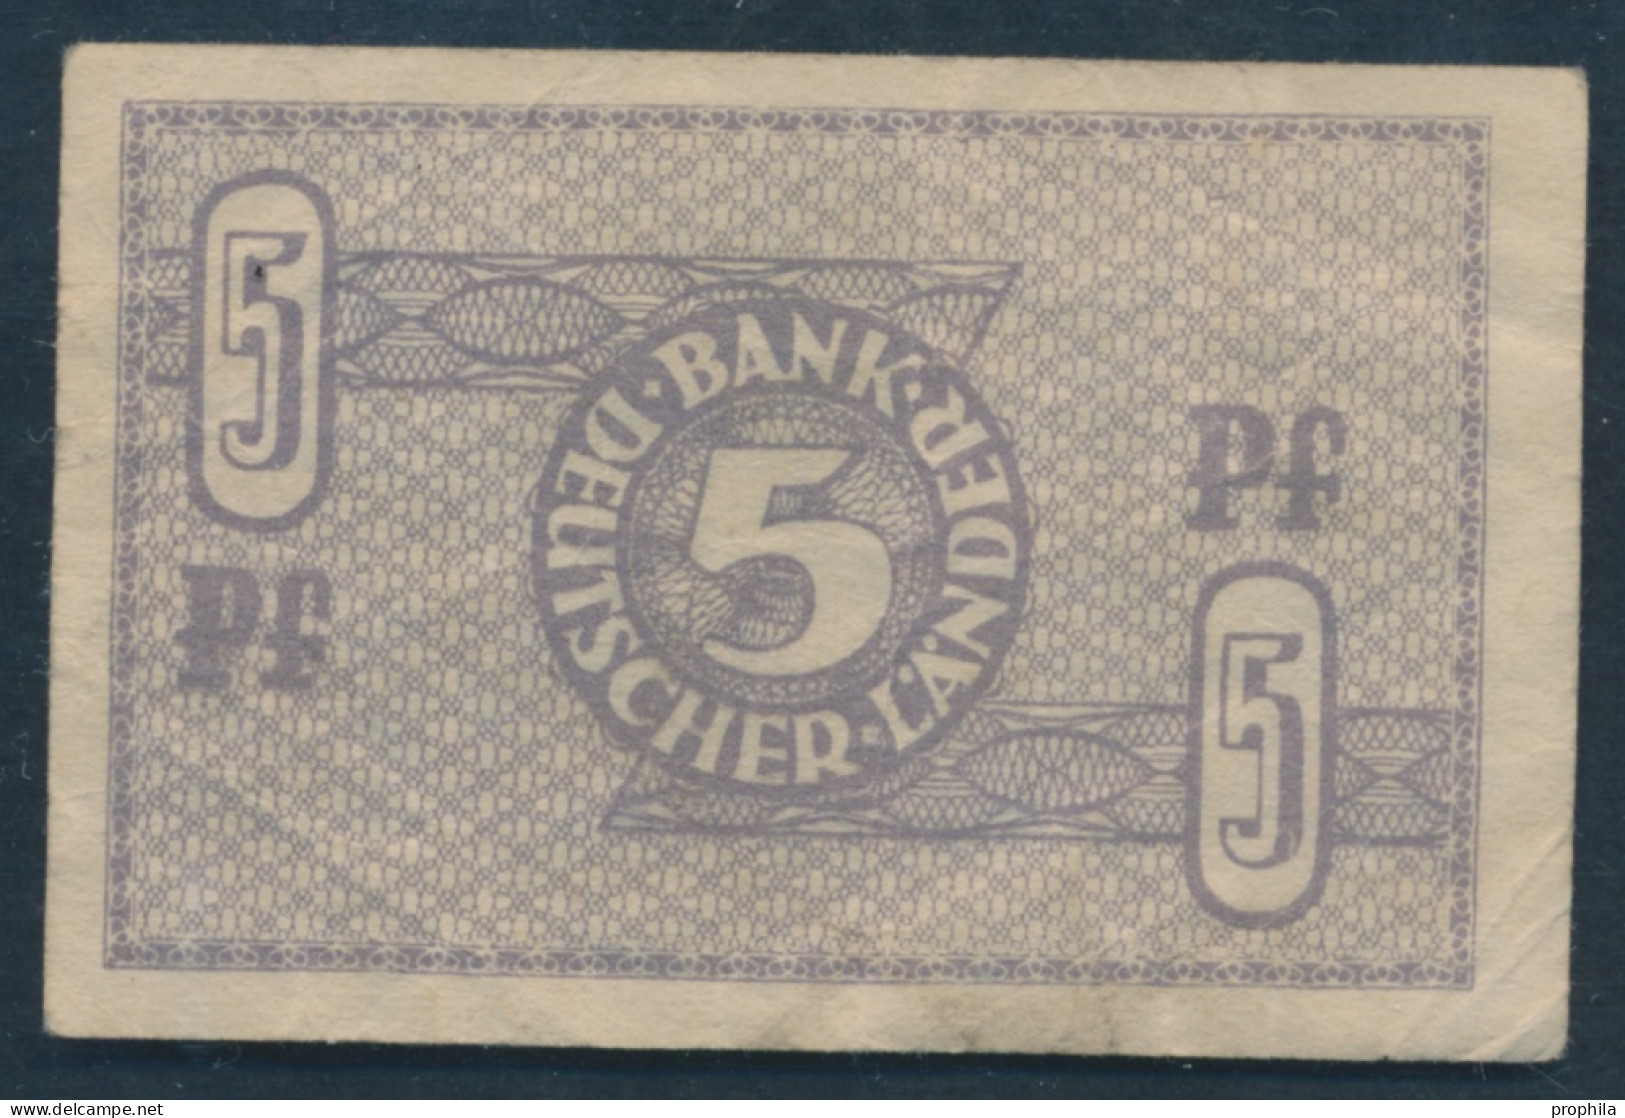 BRD Rosenbg: 250b Gebraucht (III) 1948 5 Pfennig (10288451 - 5 Pfennig